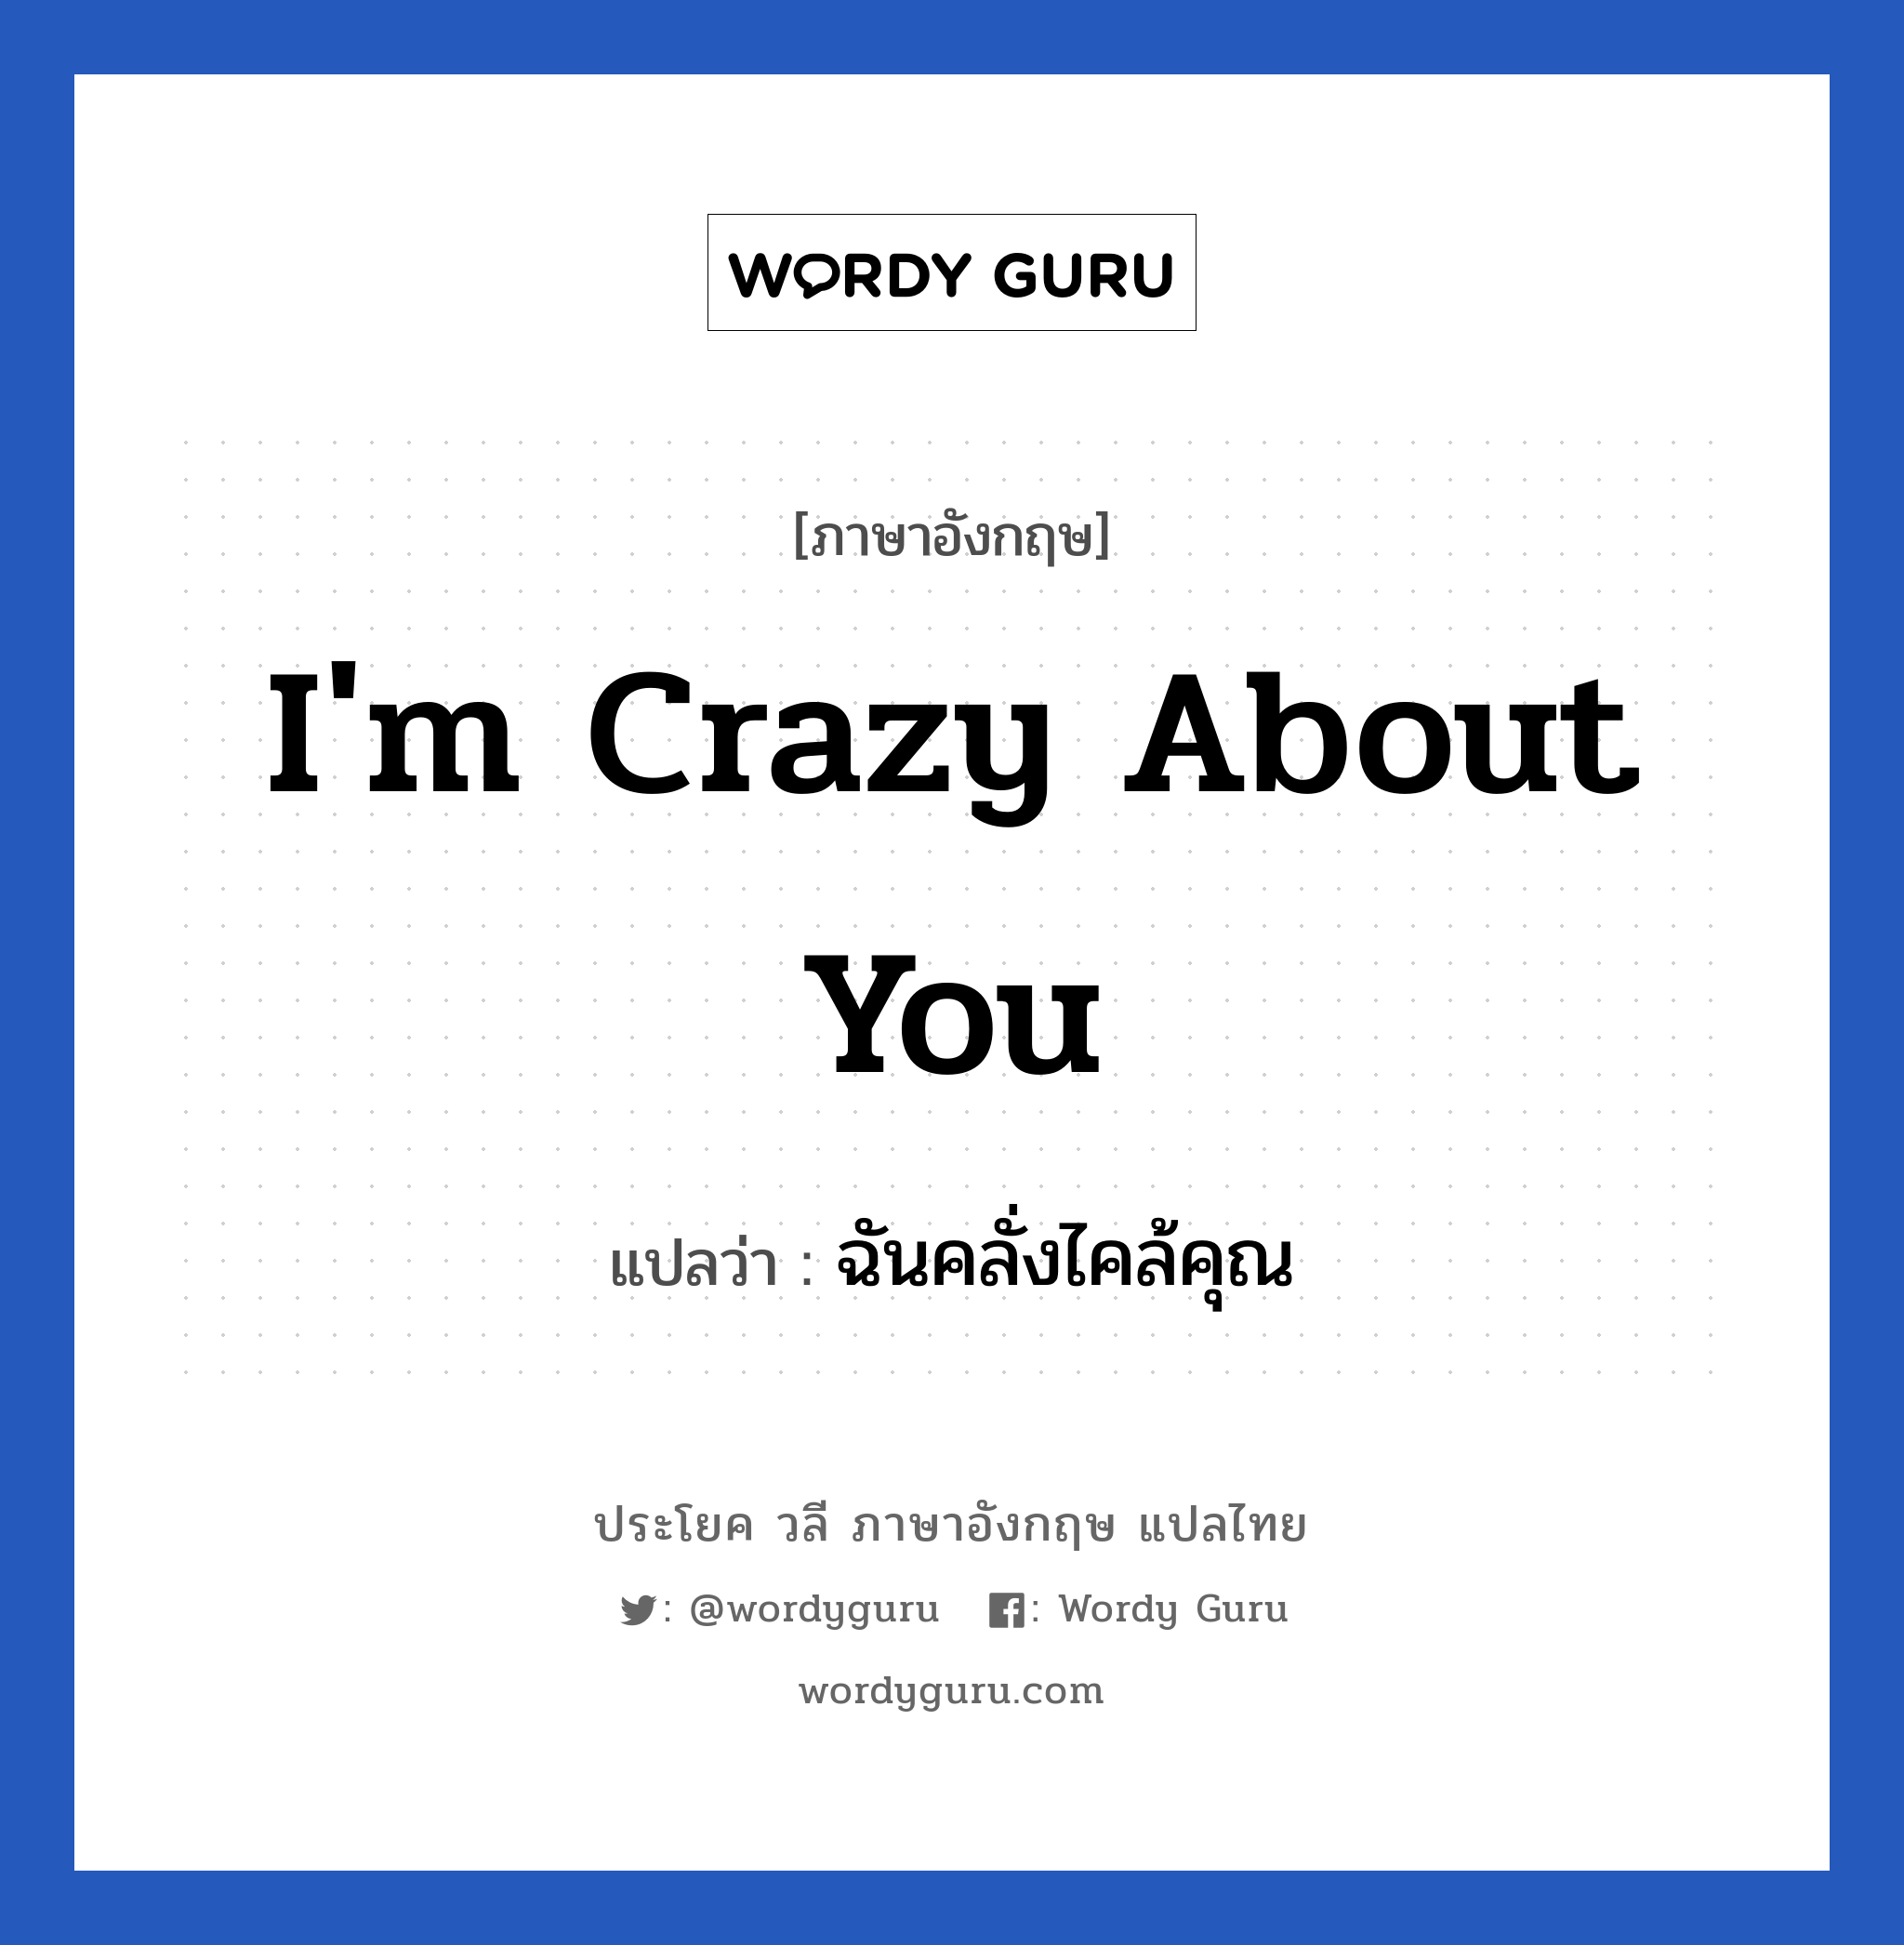 I'm crazy about you แปลว่า?, วลีภาษาอังกฤษ I'm crazy about you แปลว่า ฉันคลั่งไคล้คุณ หมวด ความรัก